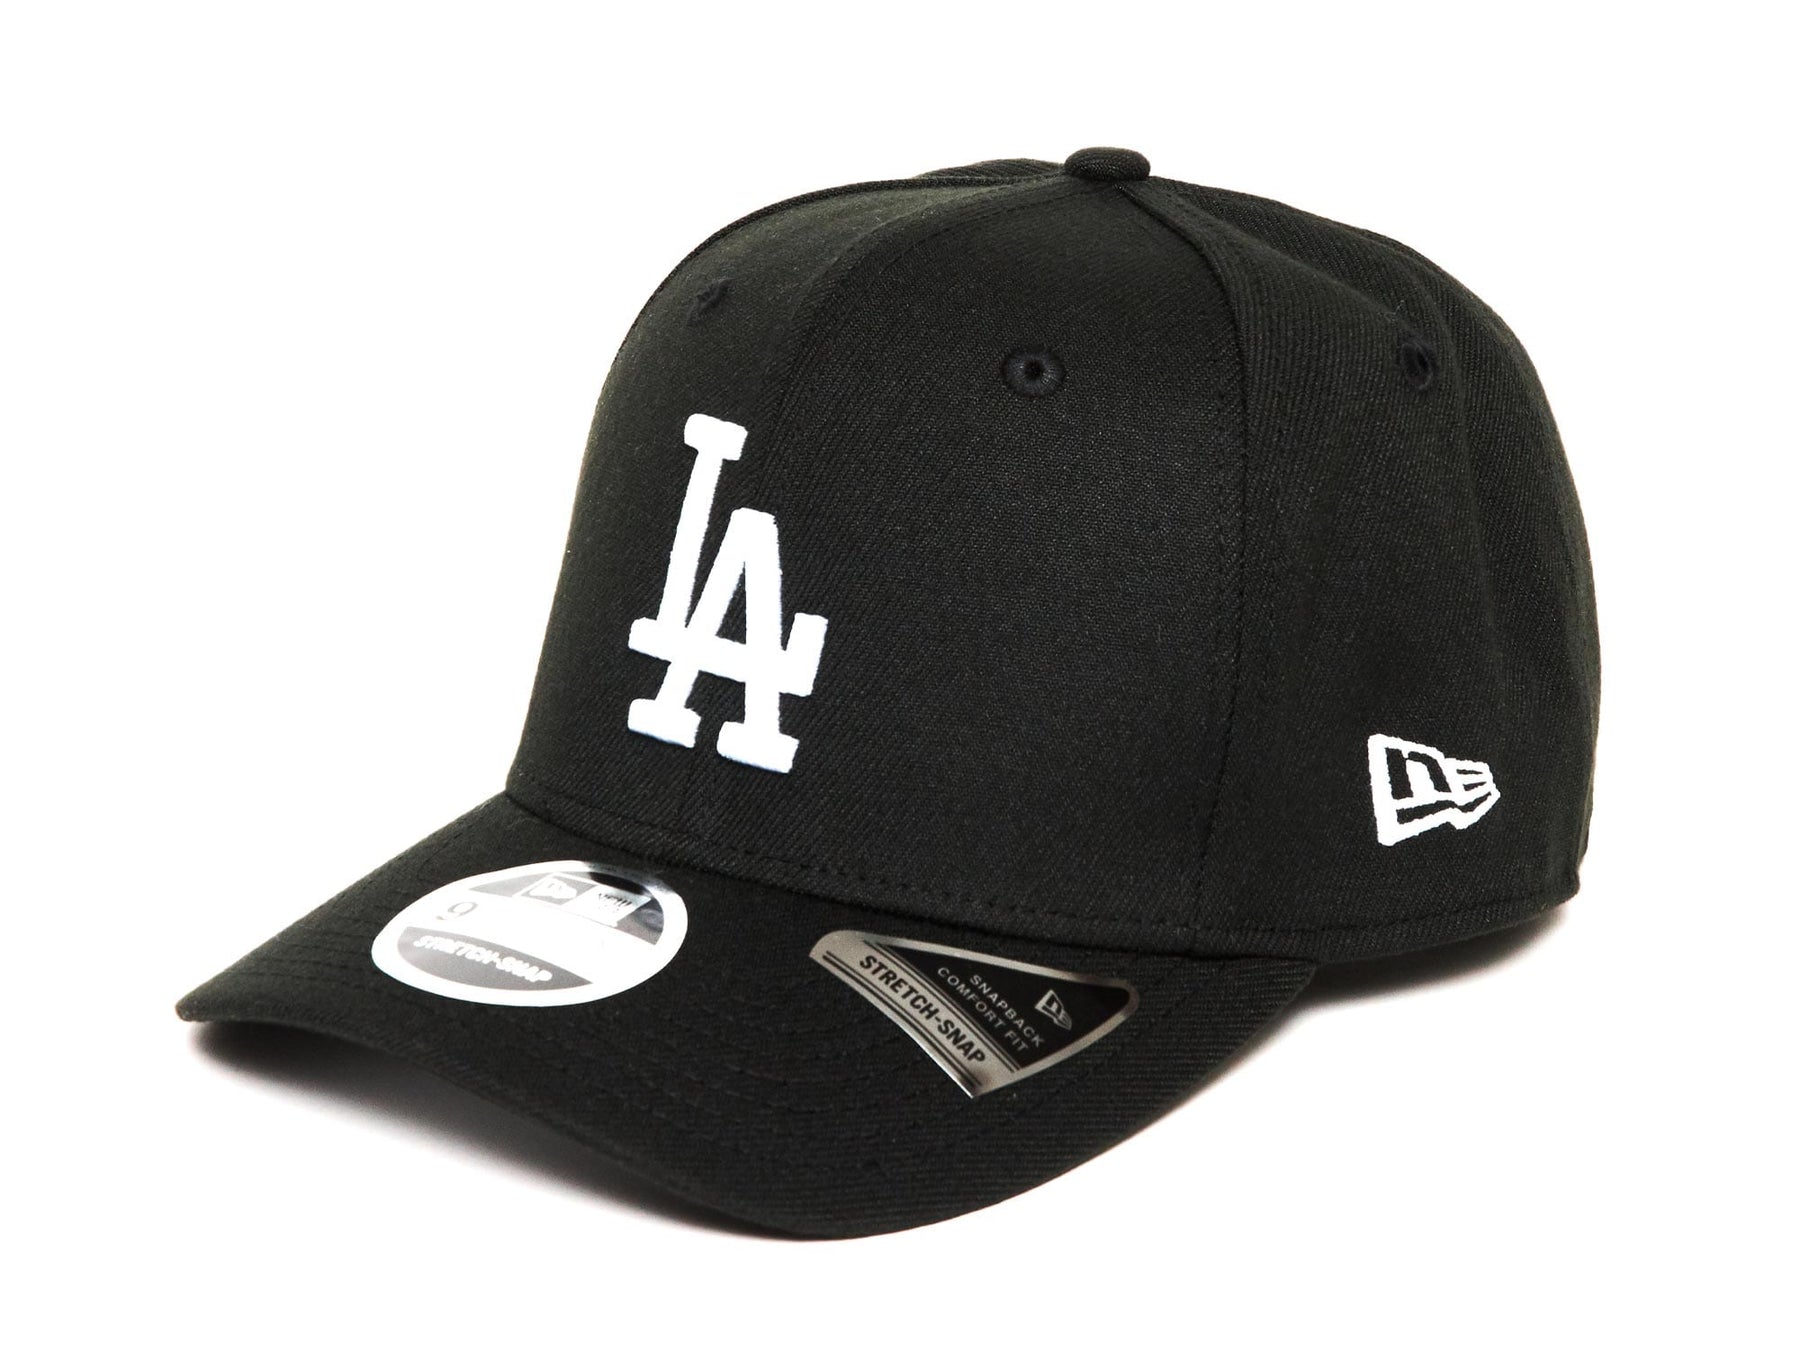 Gorra curva negra snapback 9FIFTY Stretch Snap de Los Angeles Dodgers MLB  de New Era